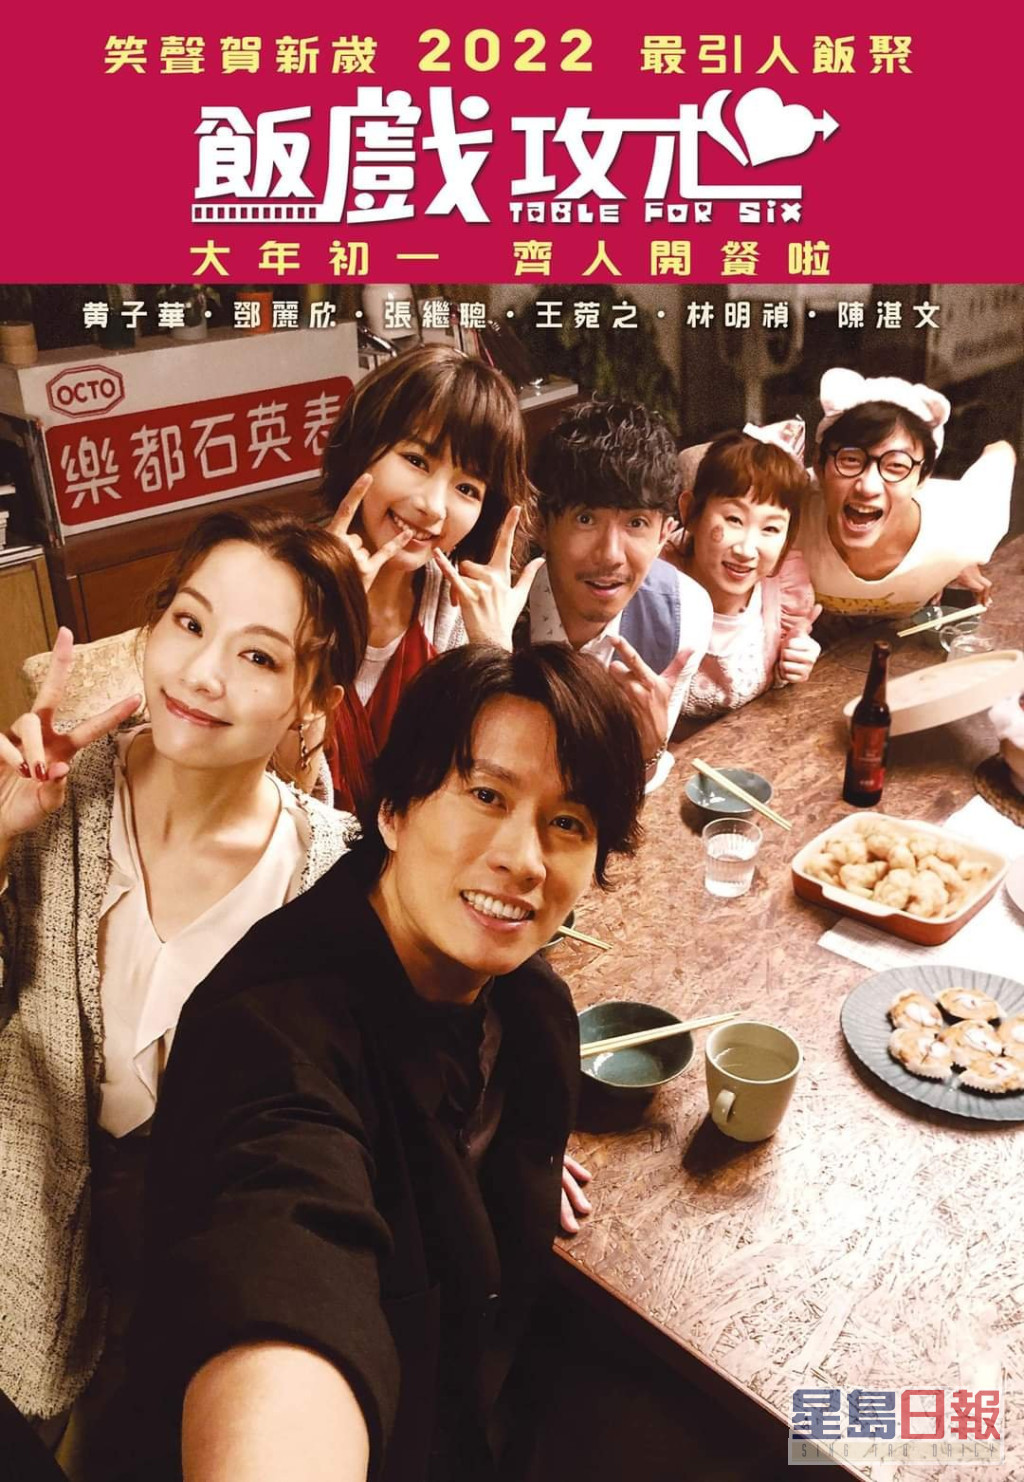 陈咏燊执导的《饭戏攻心》将于明年大年初一上映。